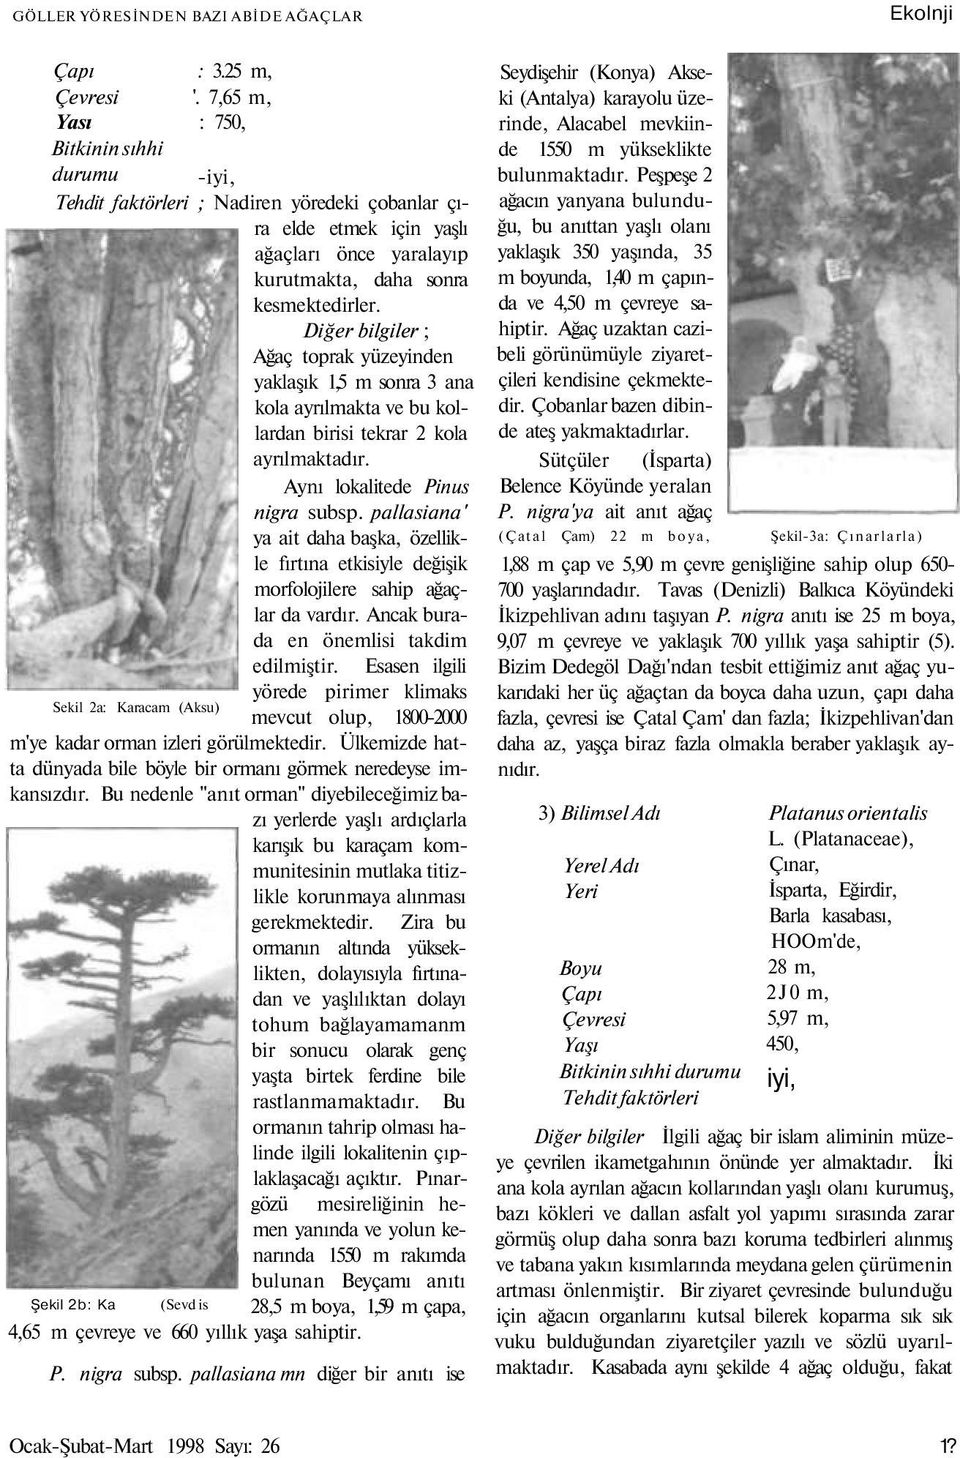 Diğer bilgiler ; Ağaç toprak yüzeyinden yaklaşık 1,5 m sonra 3 ana kola ayrılmakta ve bu kollardan birisi tekrar 2 kola ayrılmaktadır. Aynı lokalitede Pinus nigra subsp.